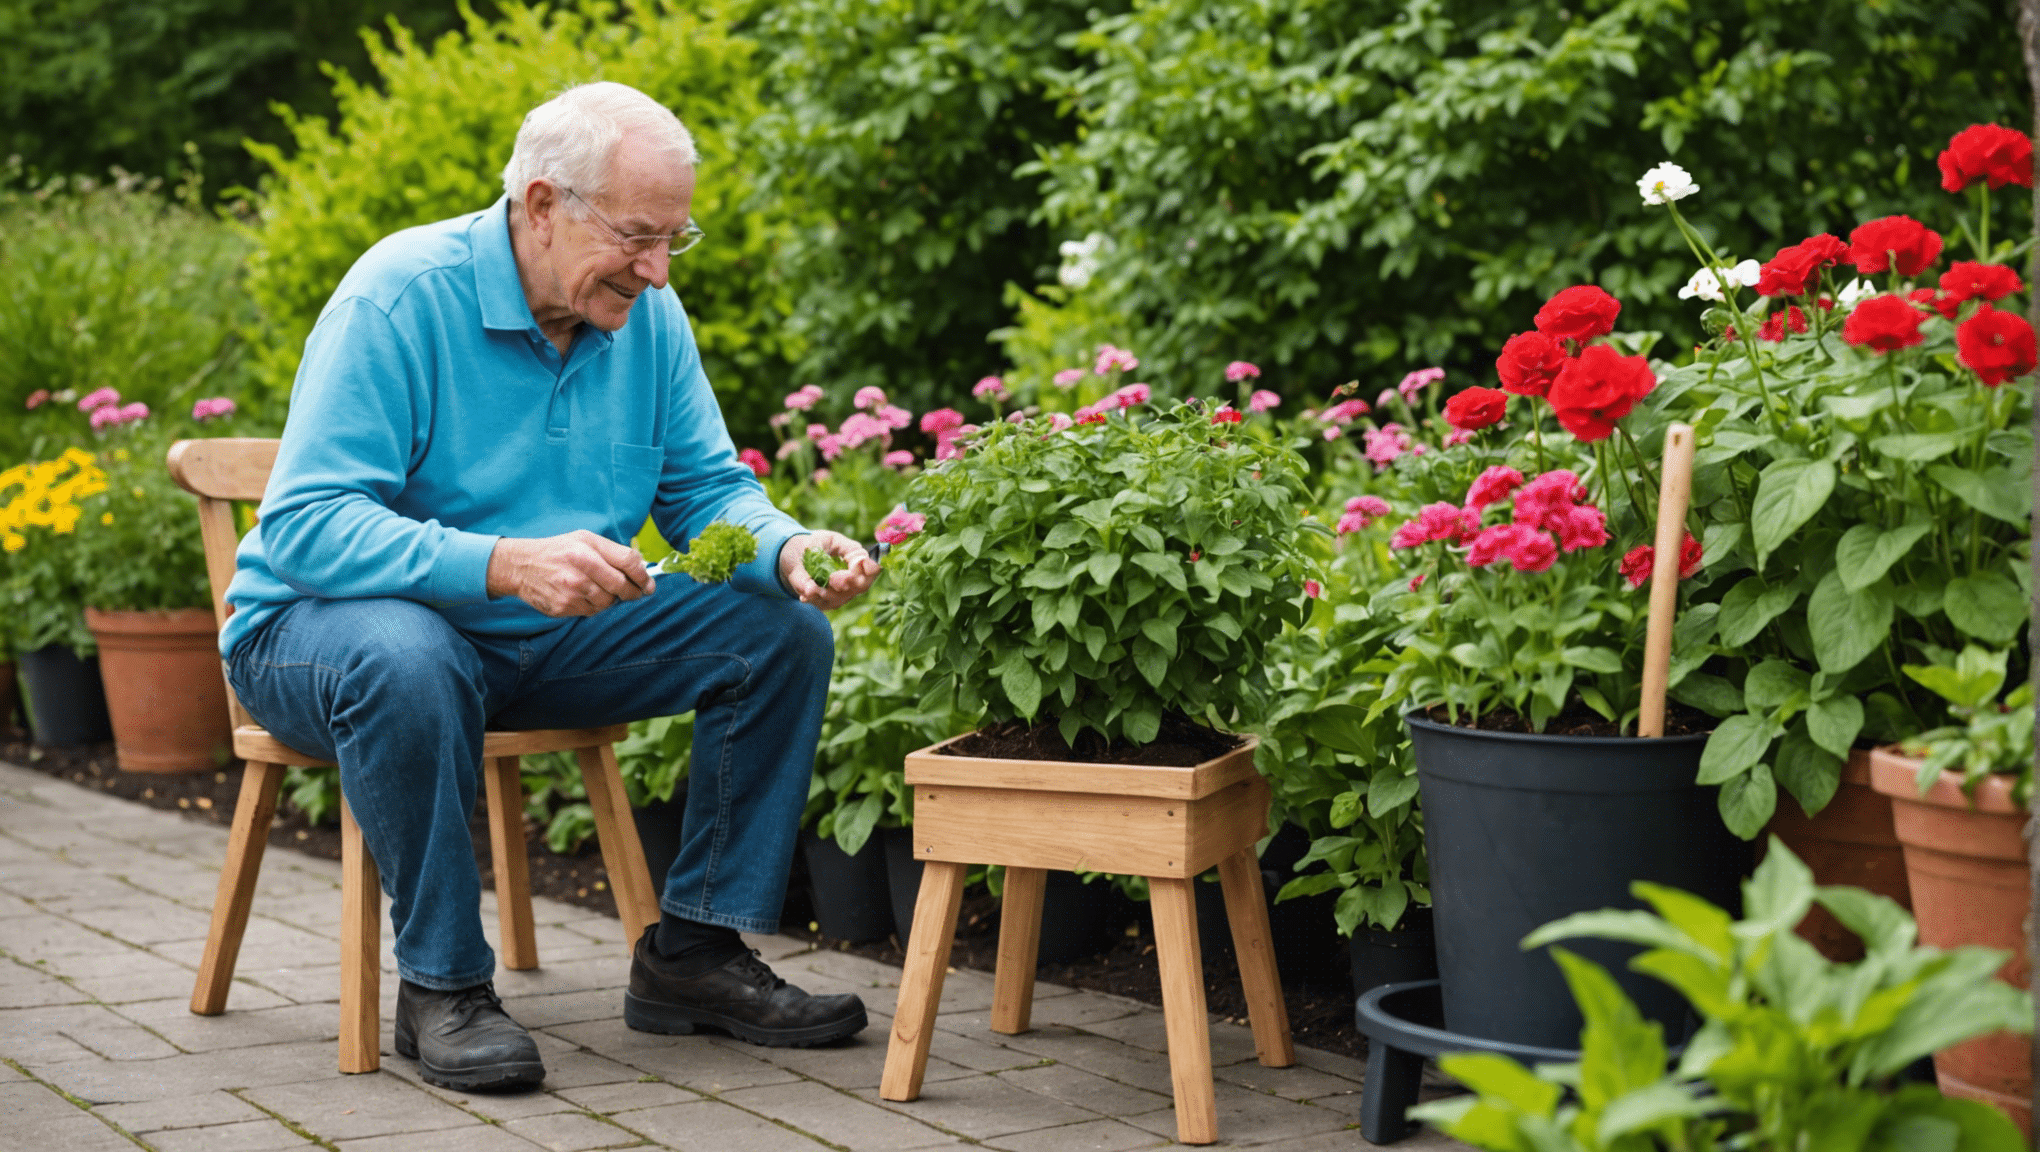 objevte výhody zahradnických stoliček pro seniory, včetně lepšího pohodlí, dostupnosti a snadnosti použití. zjistěte, jak mohou zahradní stoličky učinit zahradničení příjemnější a lépe zvládnutelnou činností pro starší jedince.